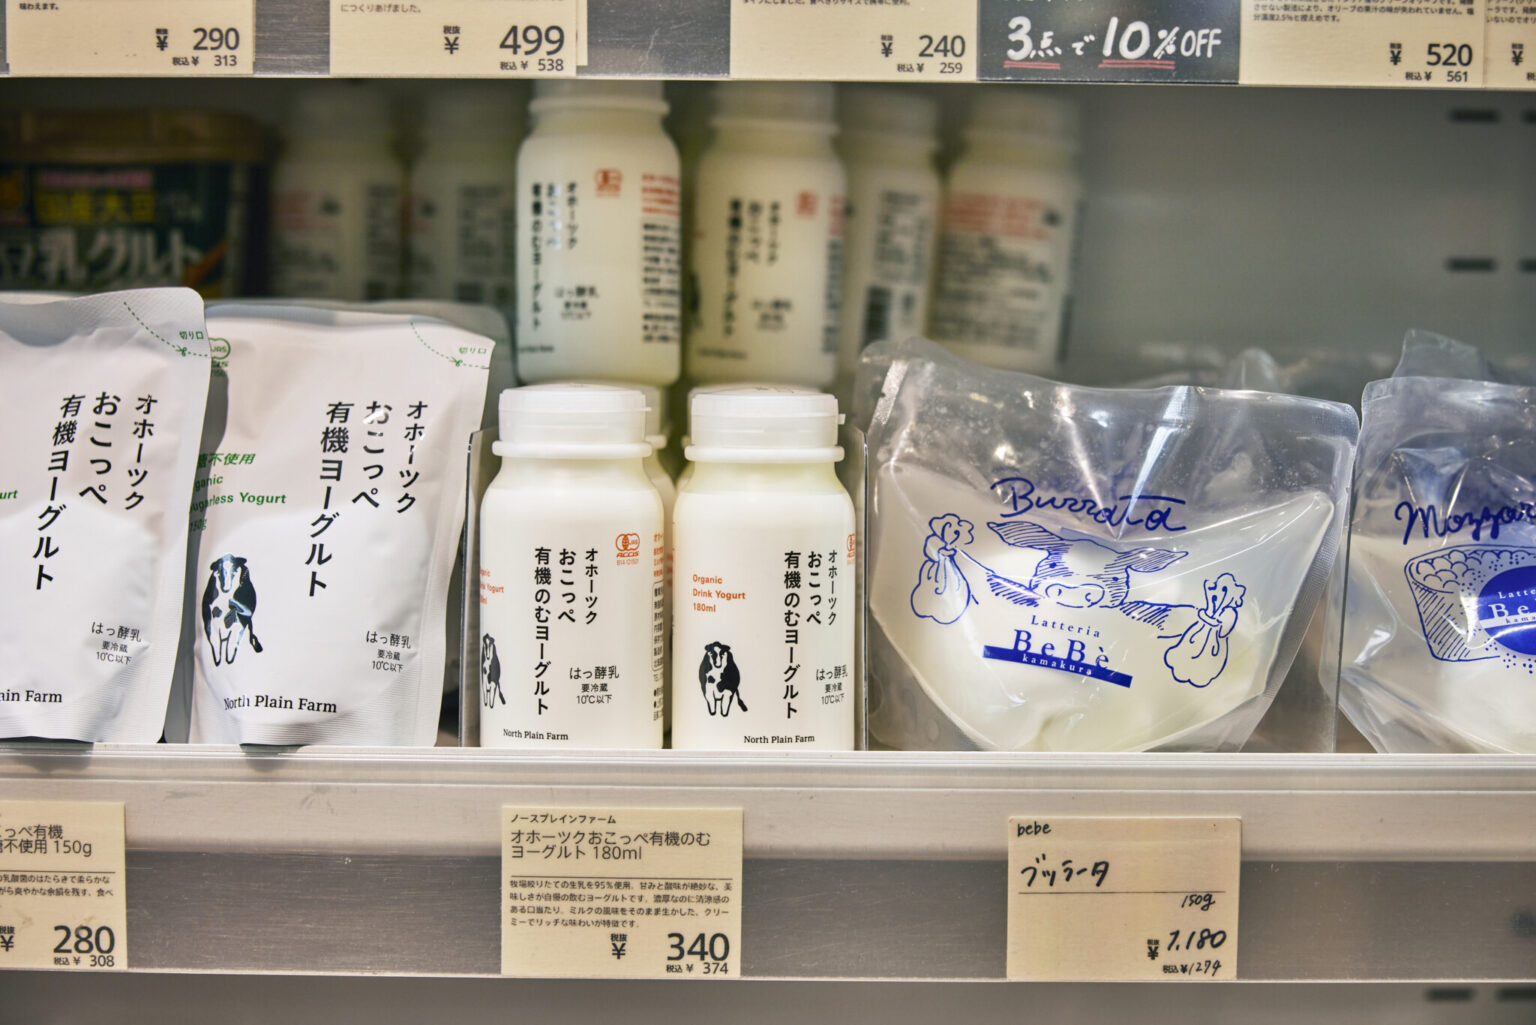 冷蔵庫もチェック。北海道の〈North Plain Farm〉の有機牛乳のファン。右から、オホーツクおこっぺ有機のむヨーグルト340円、オホーツクおこっぺ有機ヨーグルト280円。